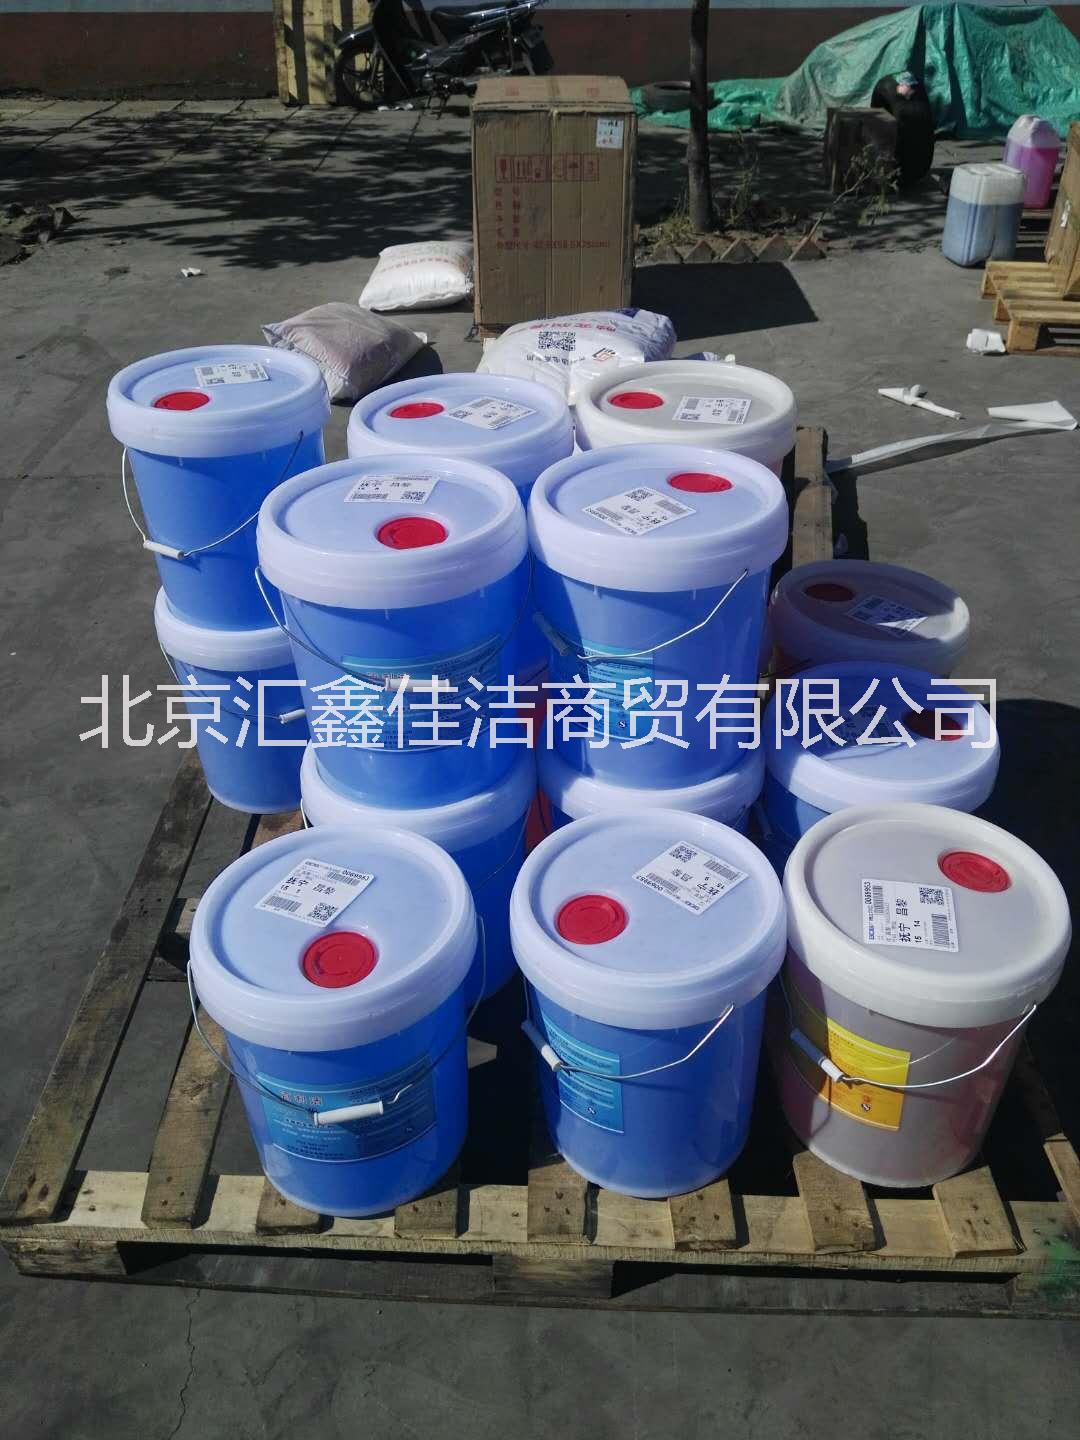 北京平谷洗碗机机用液催干剂